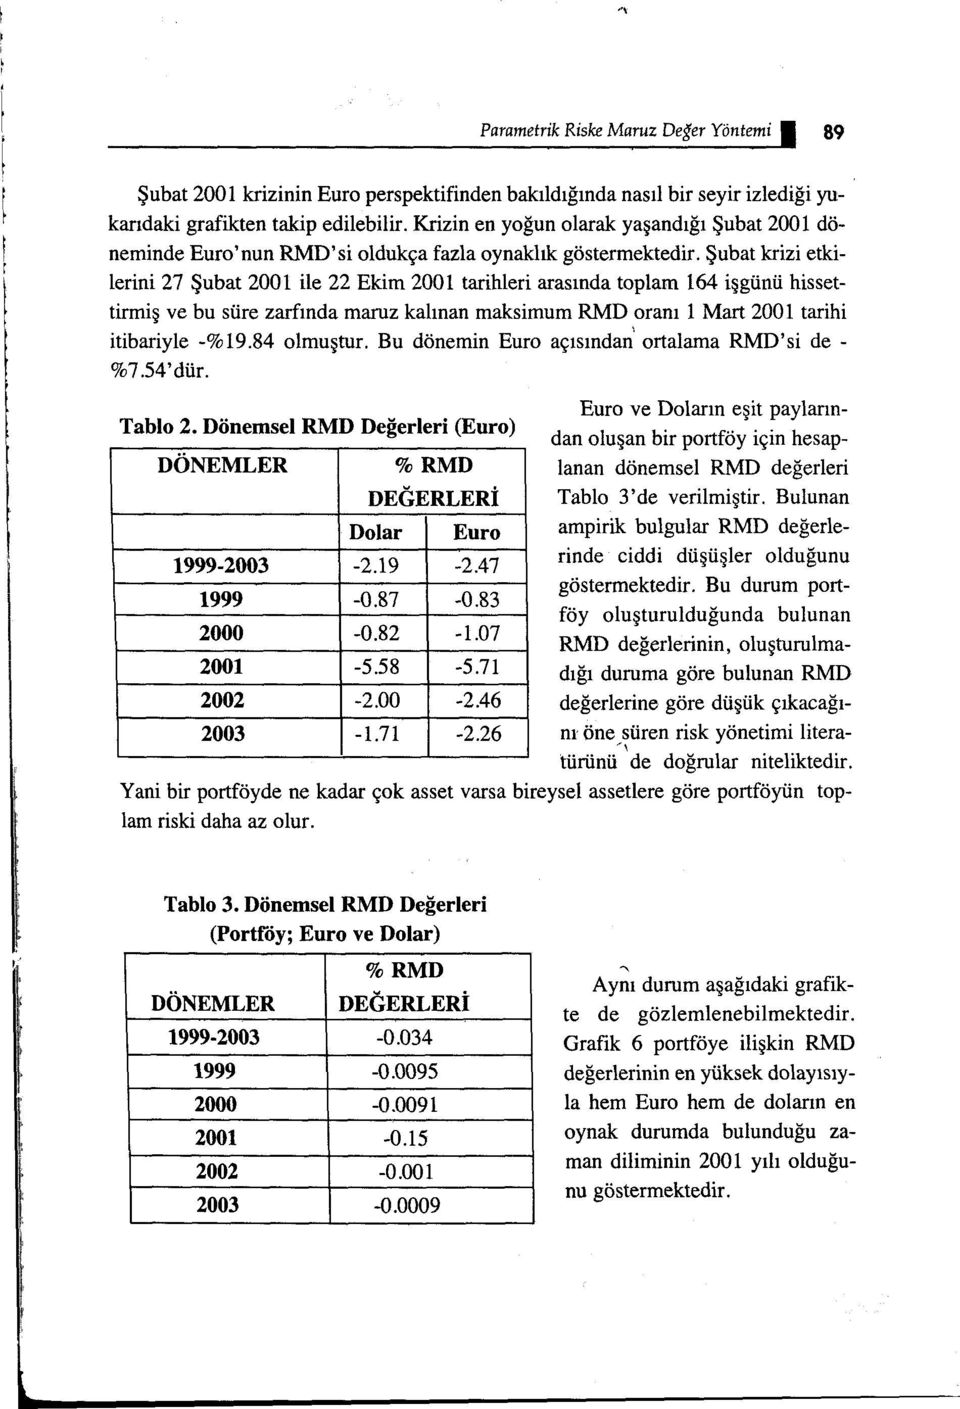 Şubat krizi etkilerini 27 Şubat 2001 ile 22 Ekim 2001 tarihleri arasında toplam 164 işgünü hissettirmiş ve bu süre zarfında maruz kalınan maksimum RMD oranı 1 Mart 2001 tarihi itibariyle -%19.